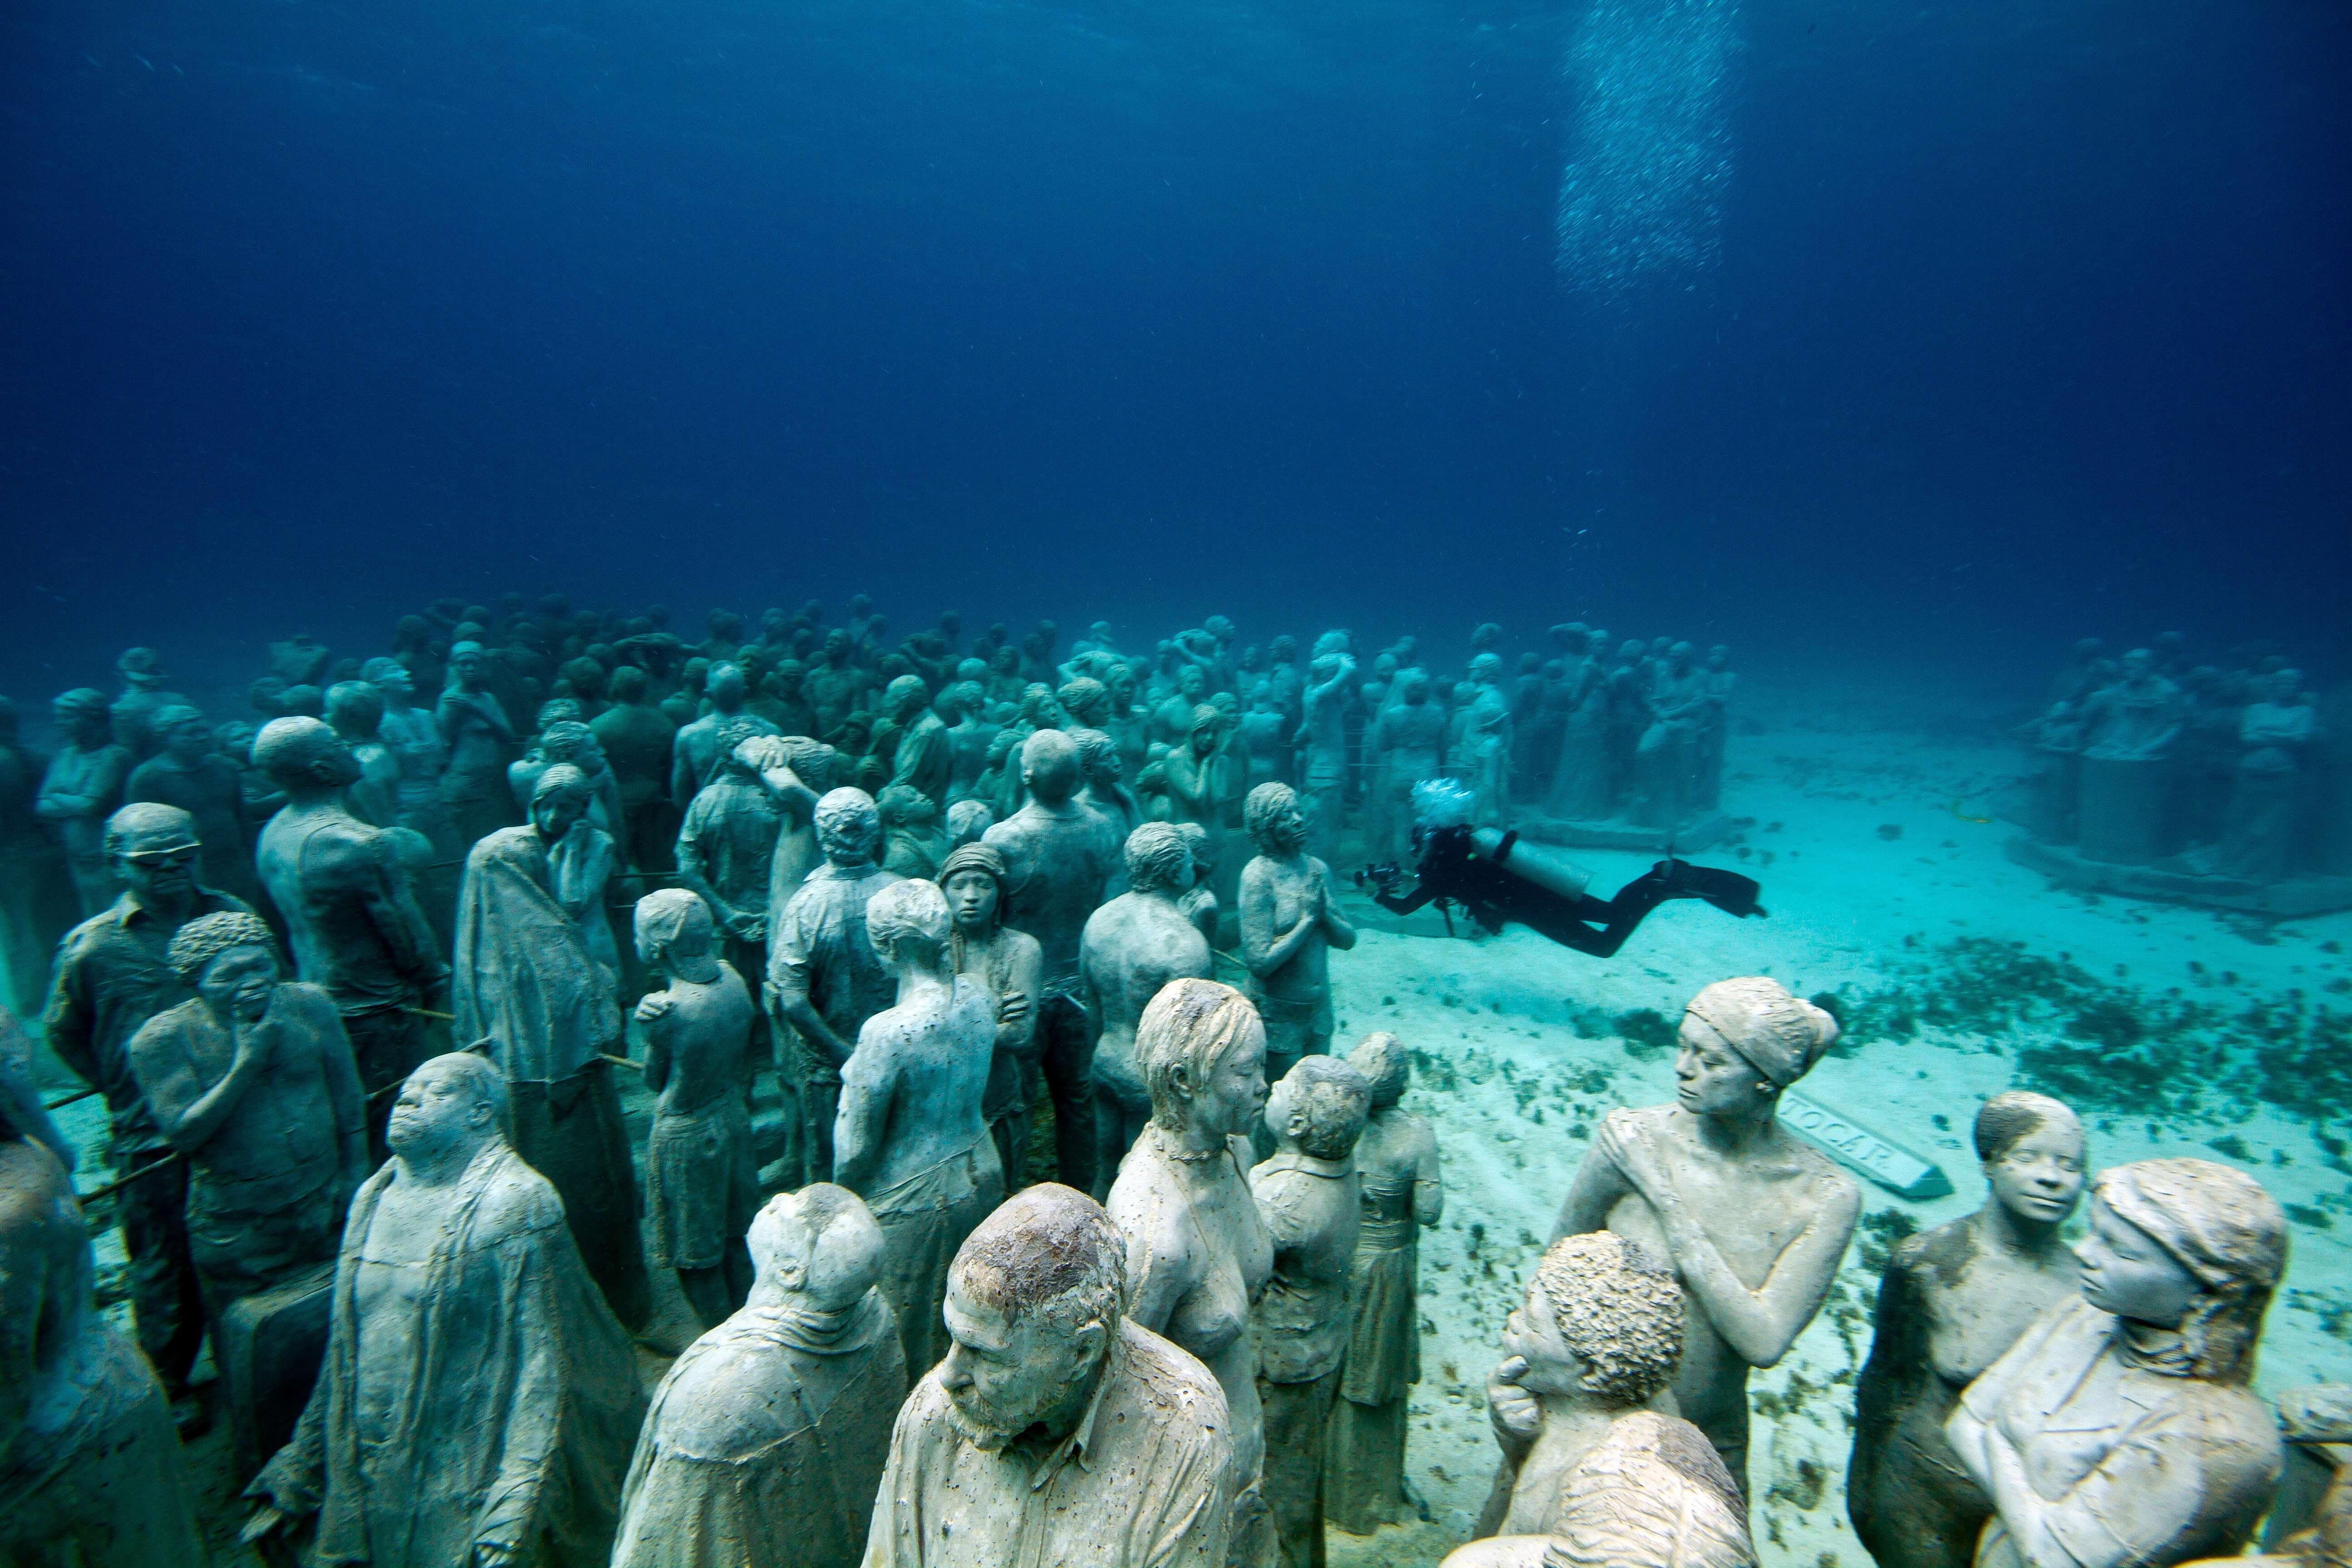 Страны ушедшие под воду. Канкун Мексика подводный музей. Канкун музей подводных скульптур. Музей подводных скульптур, Канкун, Мексика. Подводный музей скульптур в Канкуне.